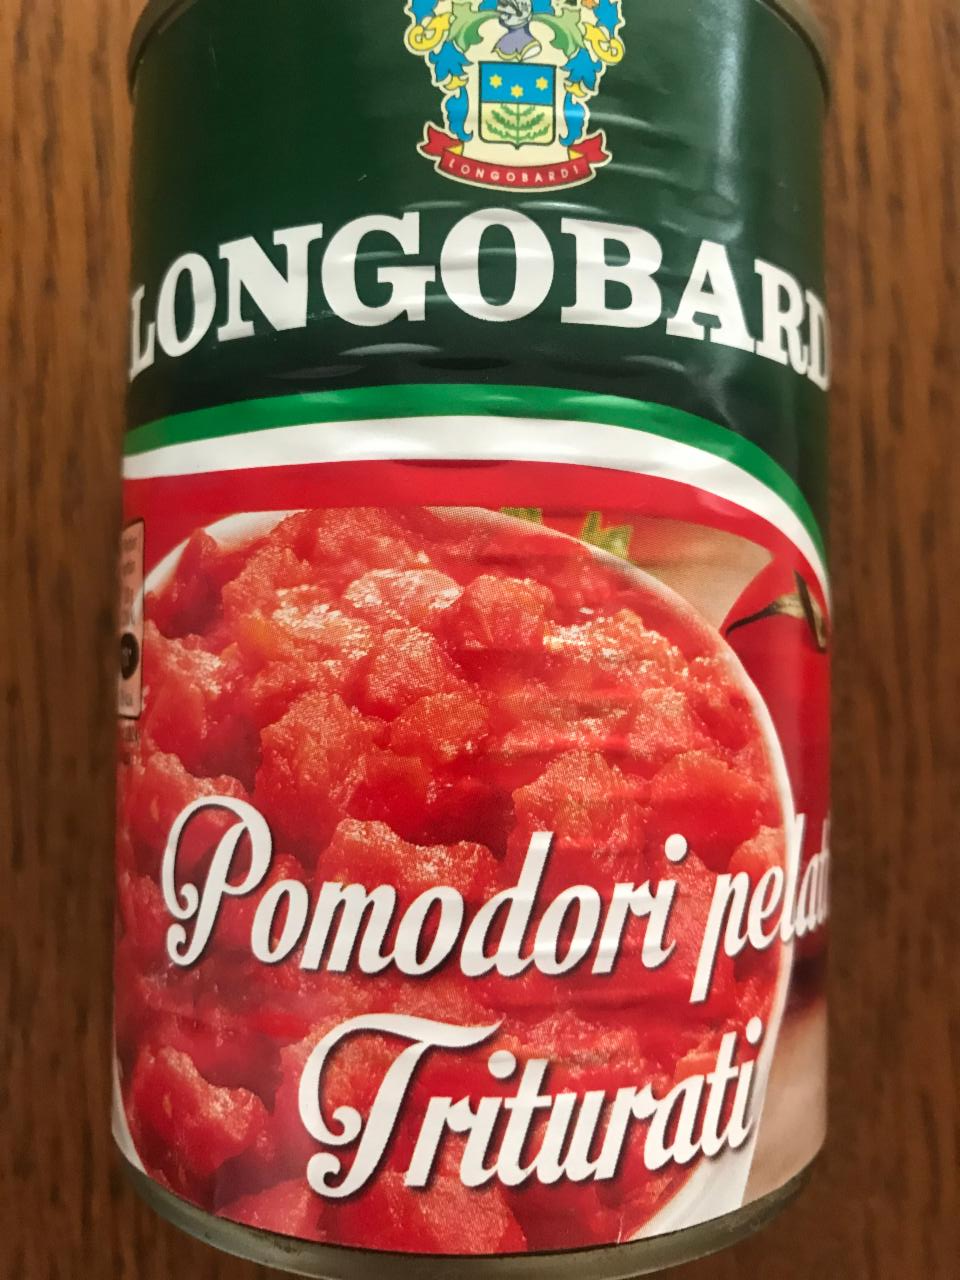 Fotografie - Pomodori pelati triturati Longobardi